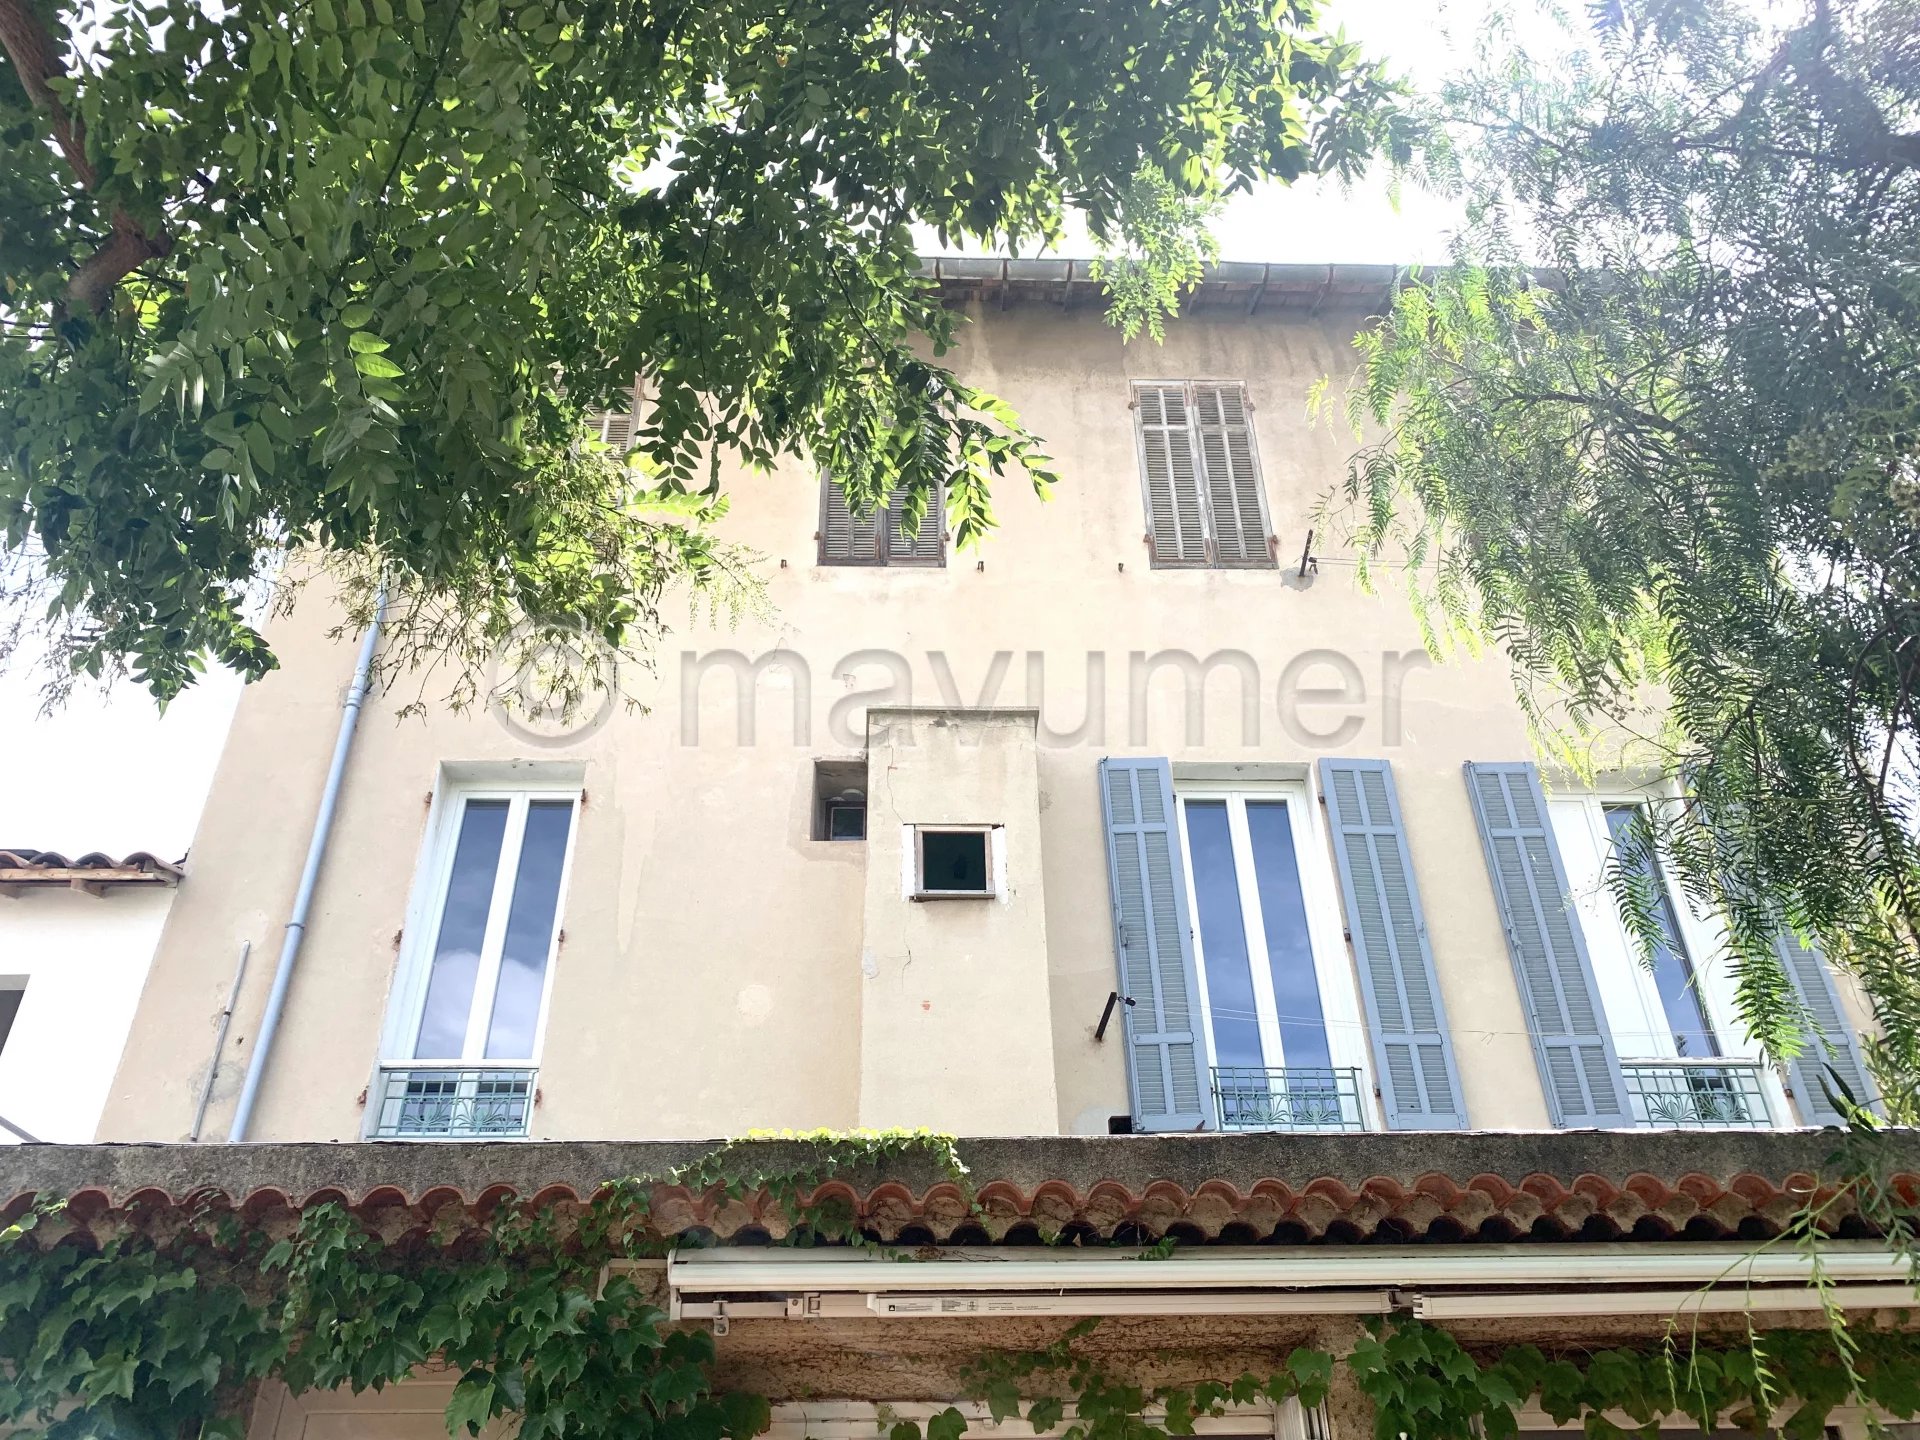 Sale Apartment - Marseille 8ème Sainte-Anne